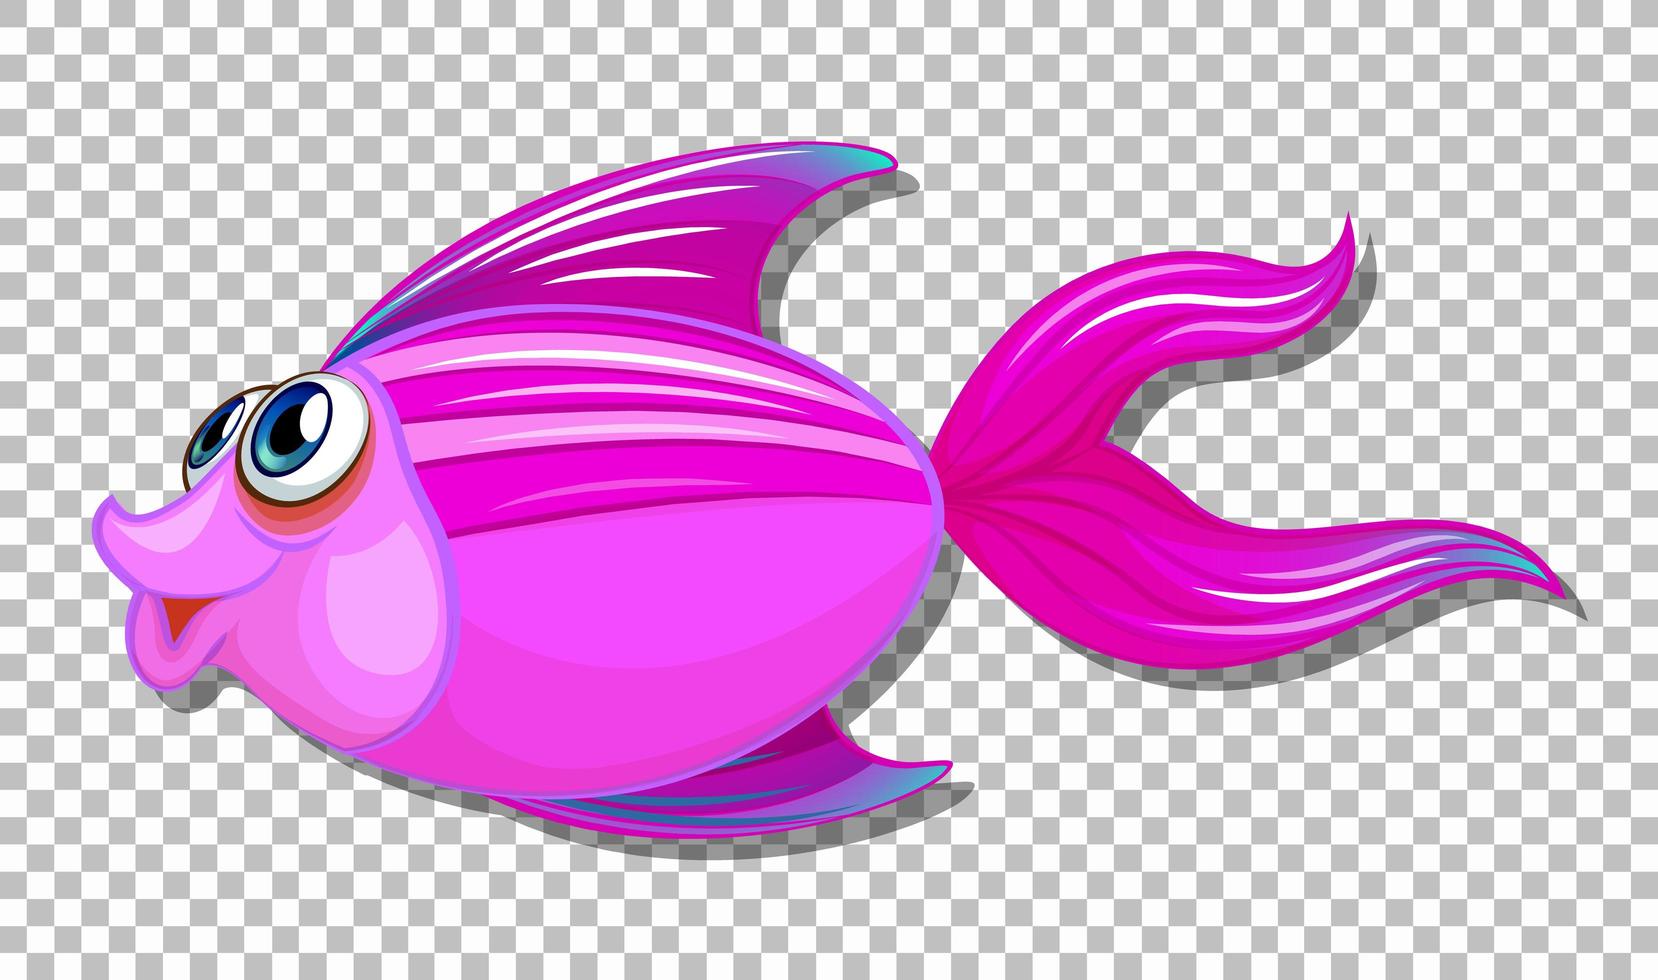 simpatico pesce con grandi occhi personaggio dei cartoni animati su sfondo trasparente vettore